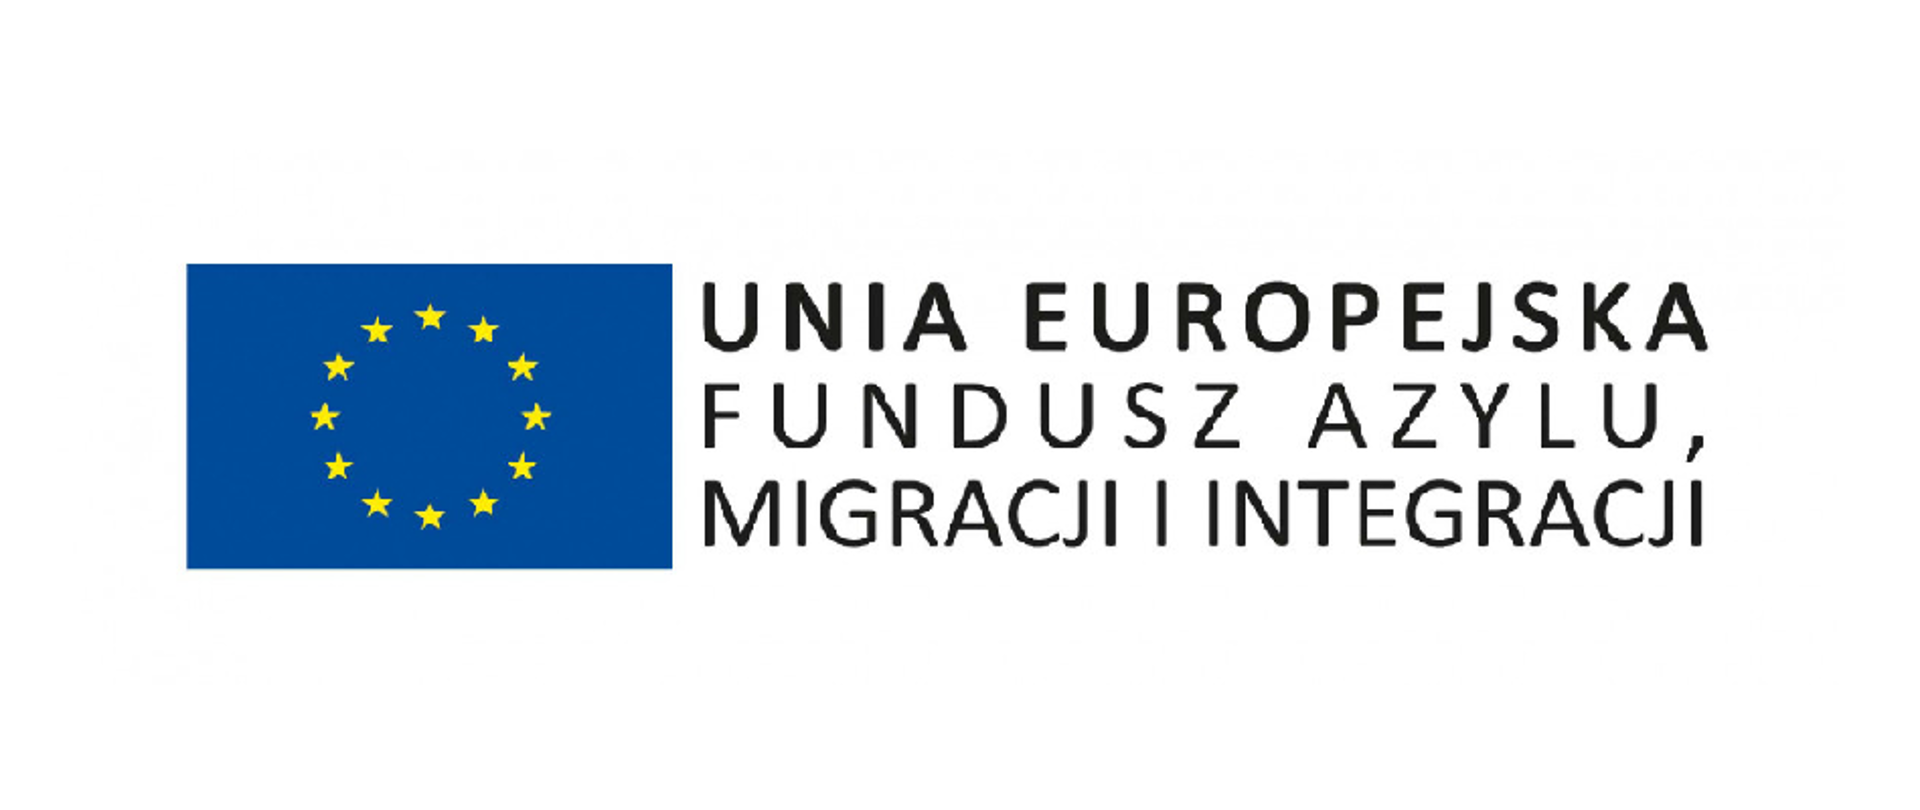 Logotyp Funduszu Azylu, Migracji i Integracji